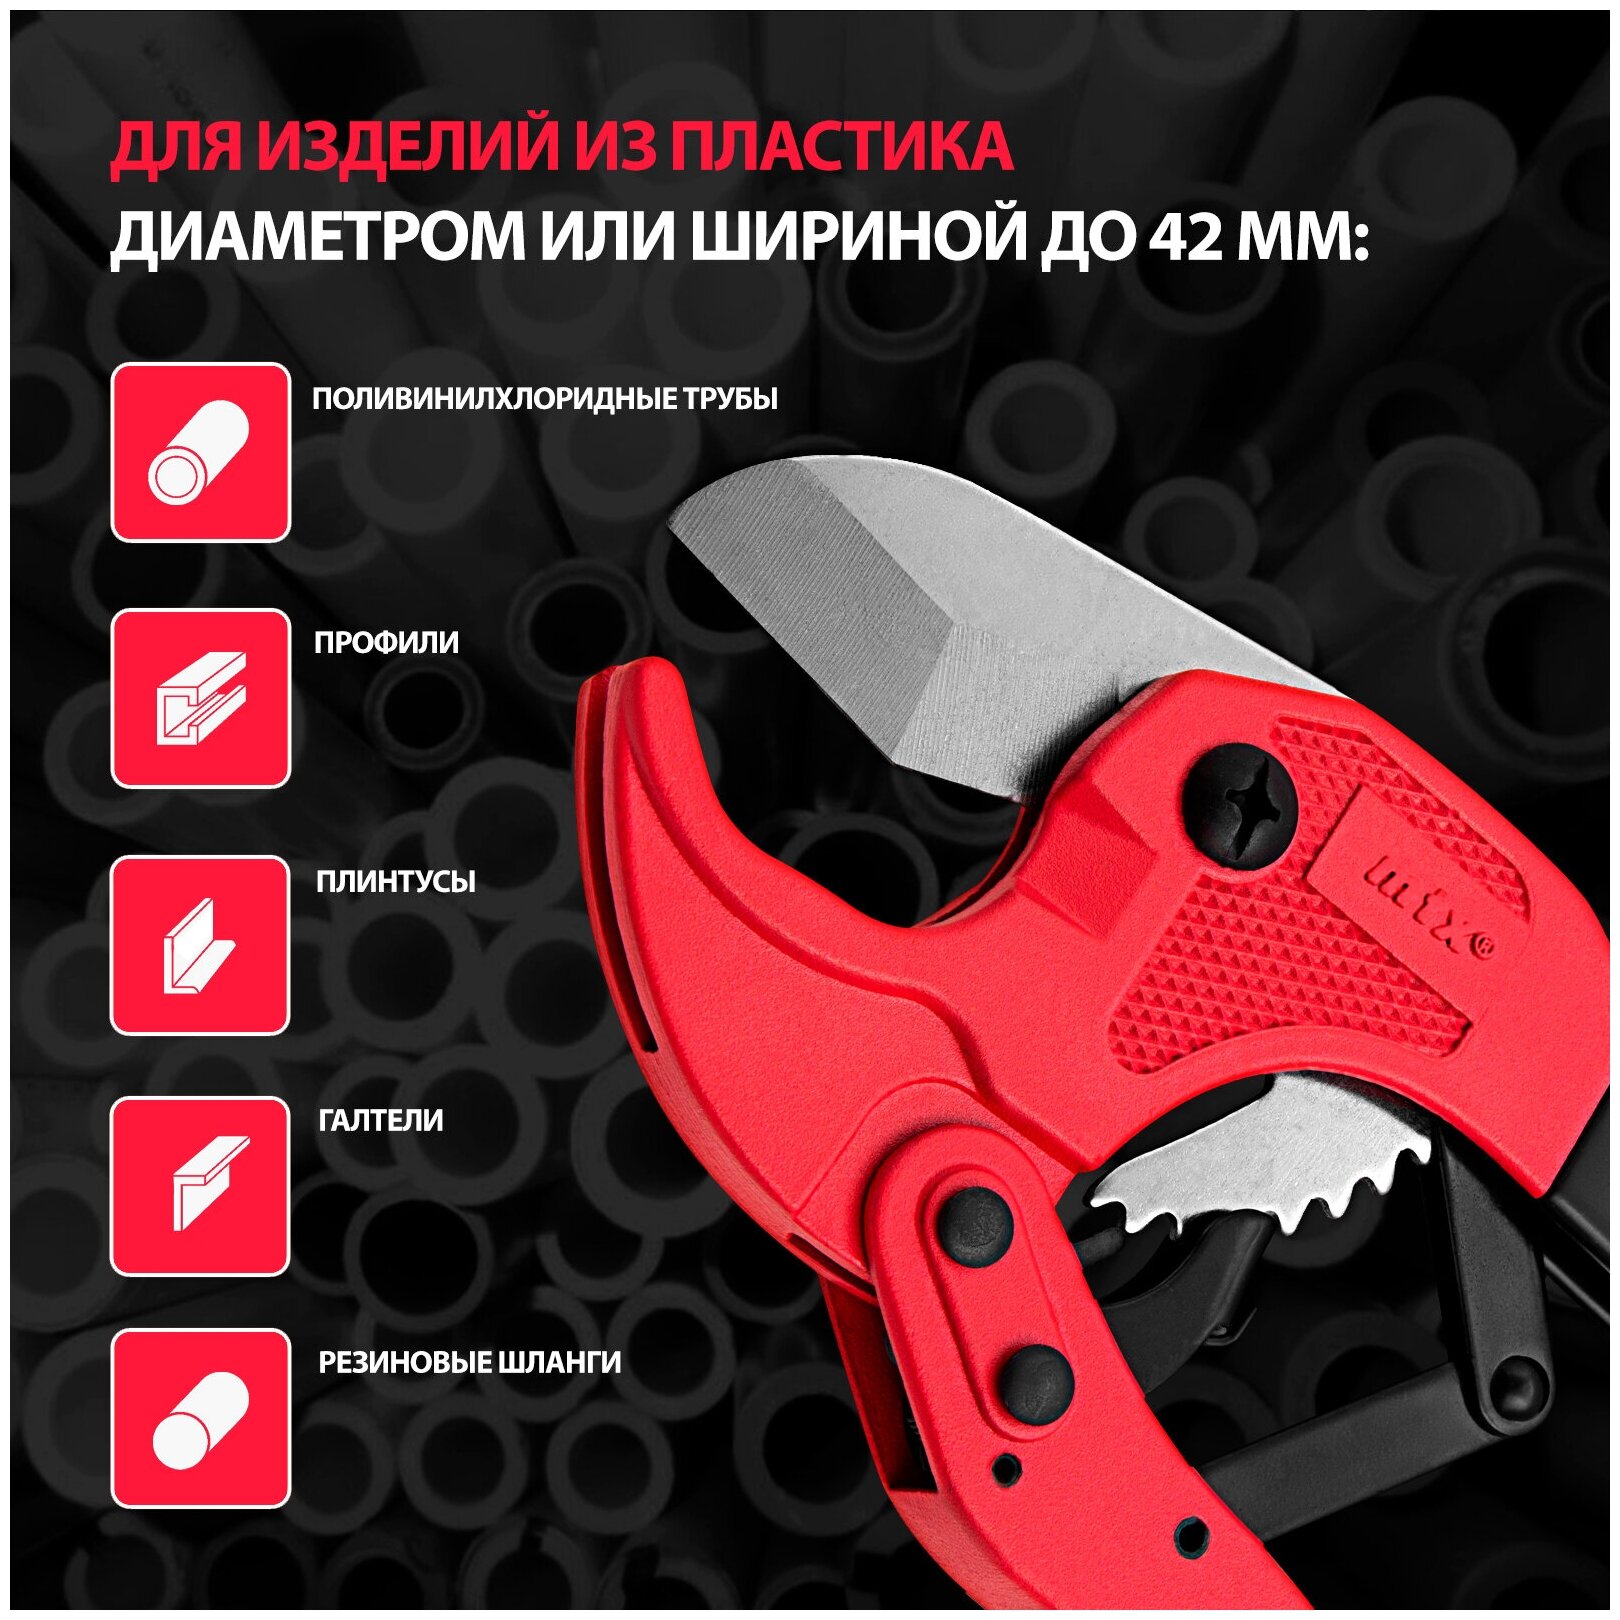 Ножницы для резки изделий из пластика Matrix диаметр до 42 мм 784105